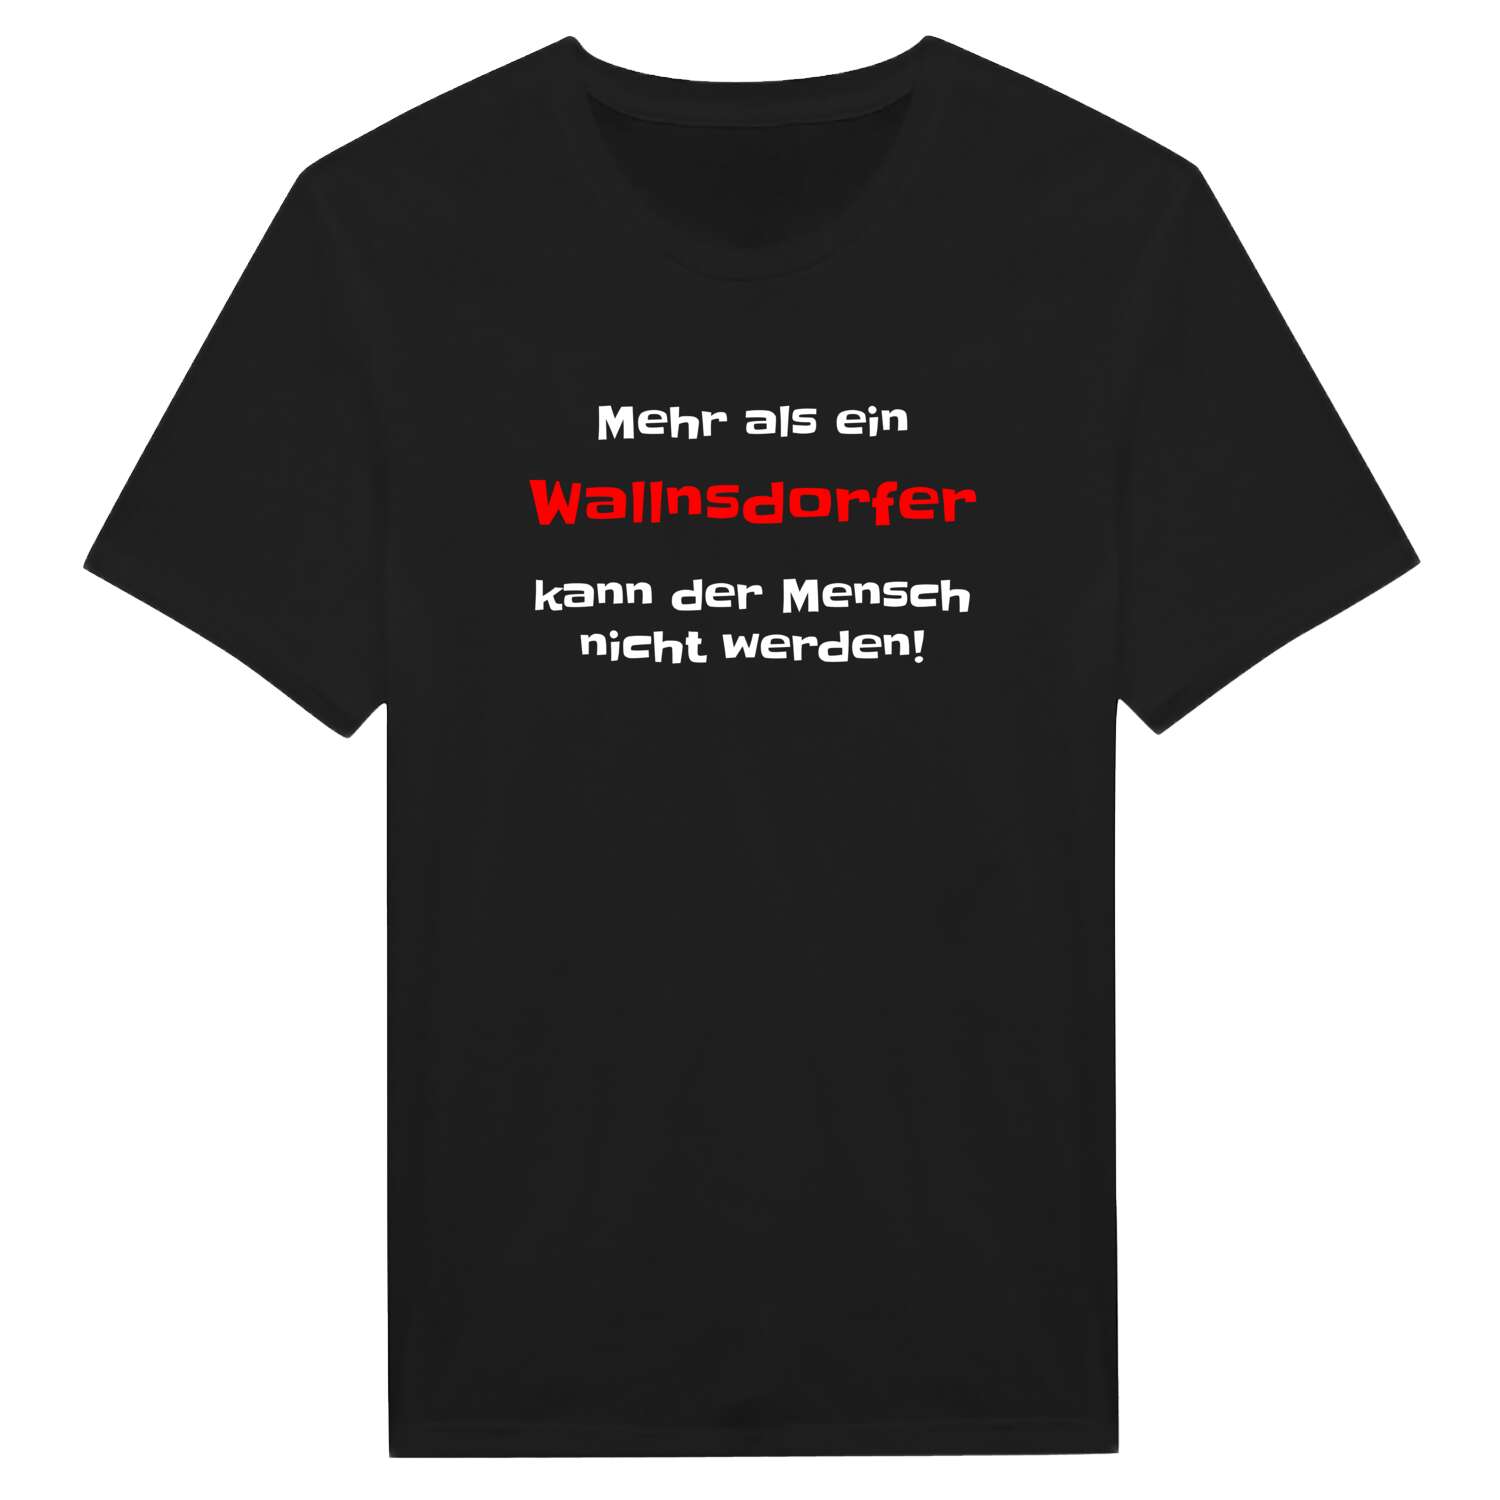 Wallnsdorf T-Shirt »Mehr als ein«